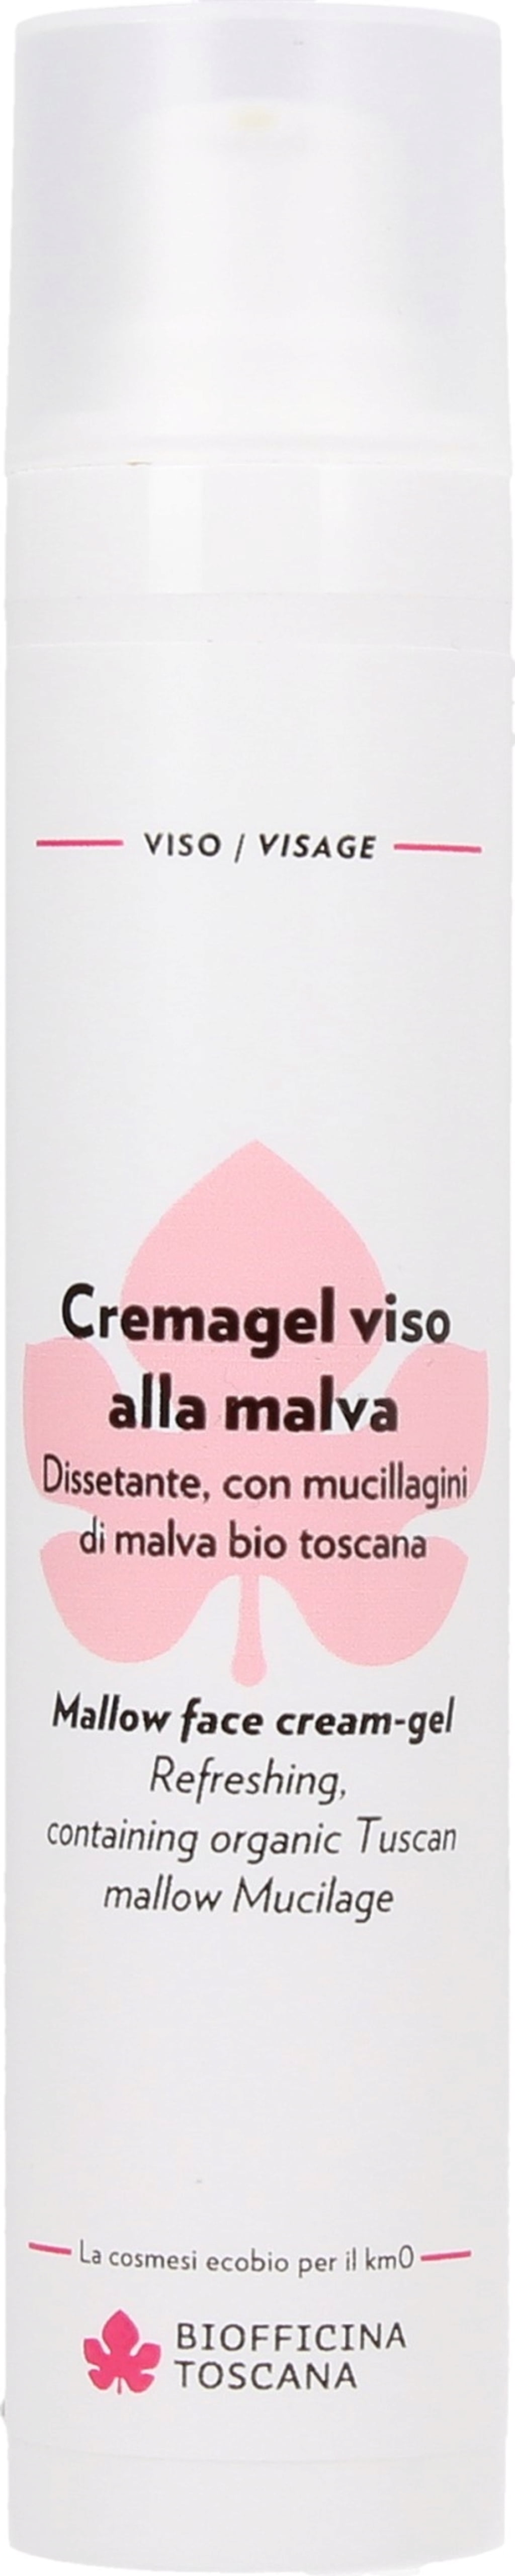 Biofficina Toscana Gesichts-Cremegel Malve - 50 ml